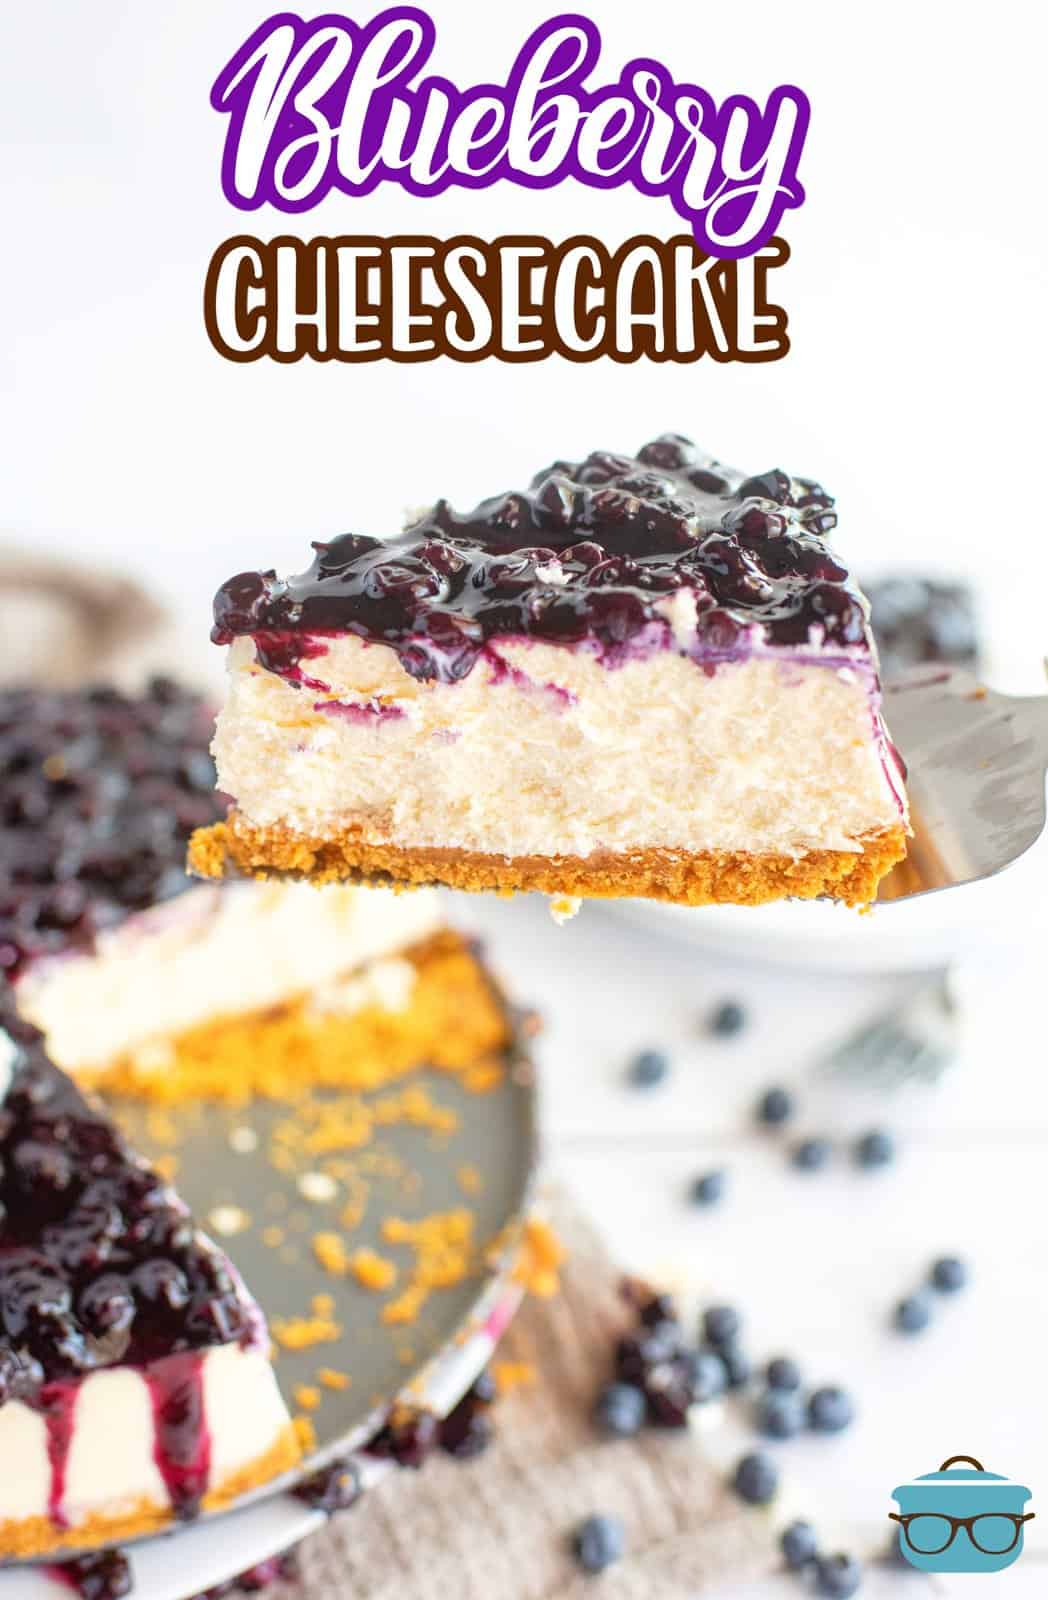 Pie server con in mano una fetta di cheesecake ai mirtilli tagliata dalla padella, immagine Pinterest.